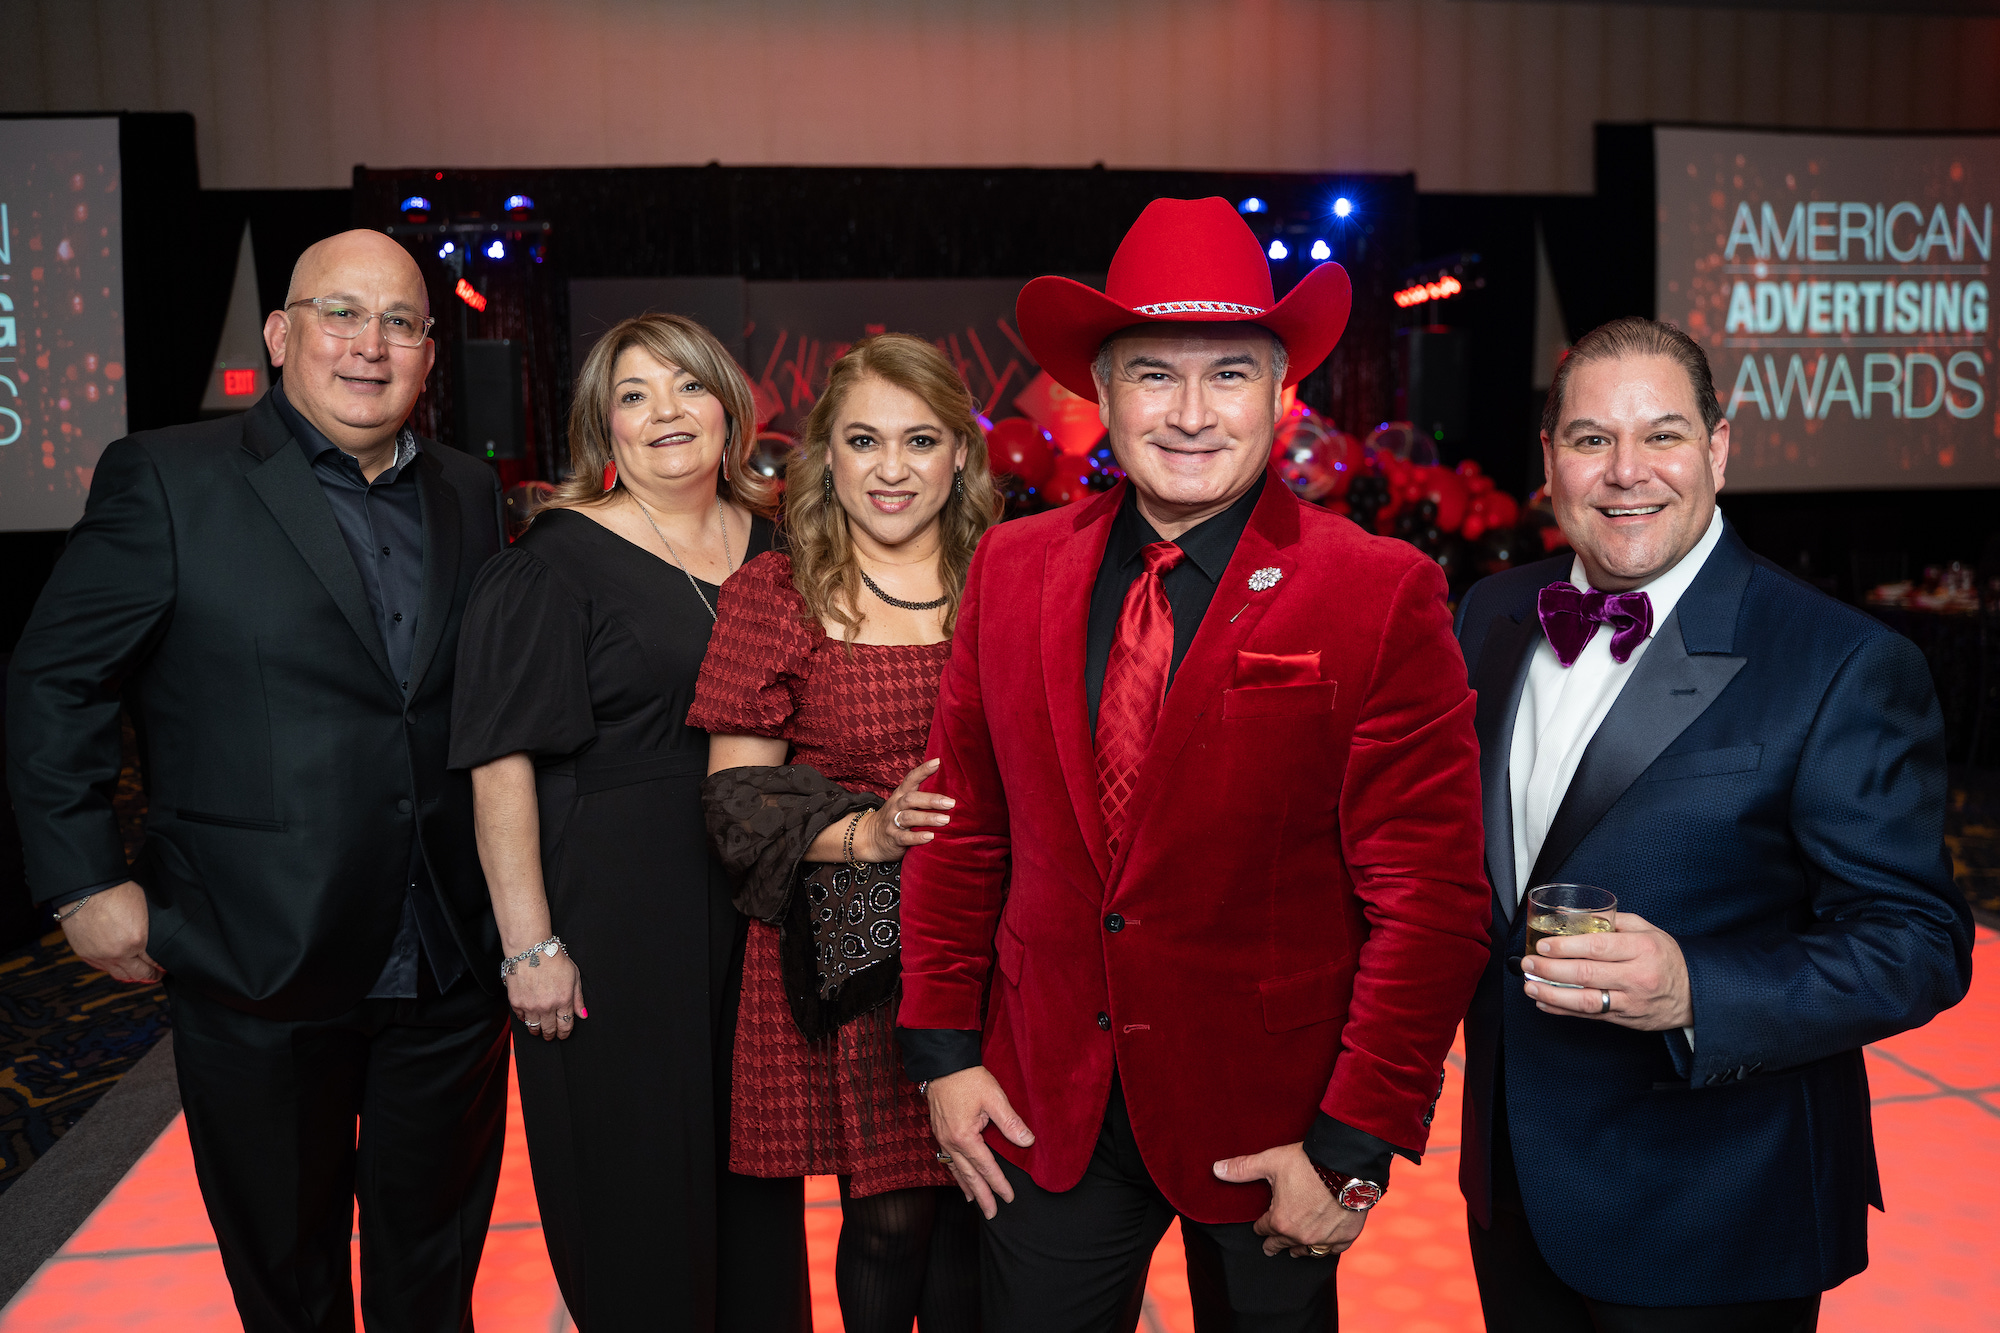 The Red Ball – American Advertising Award Gala – McAllen, Texas